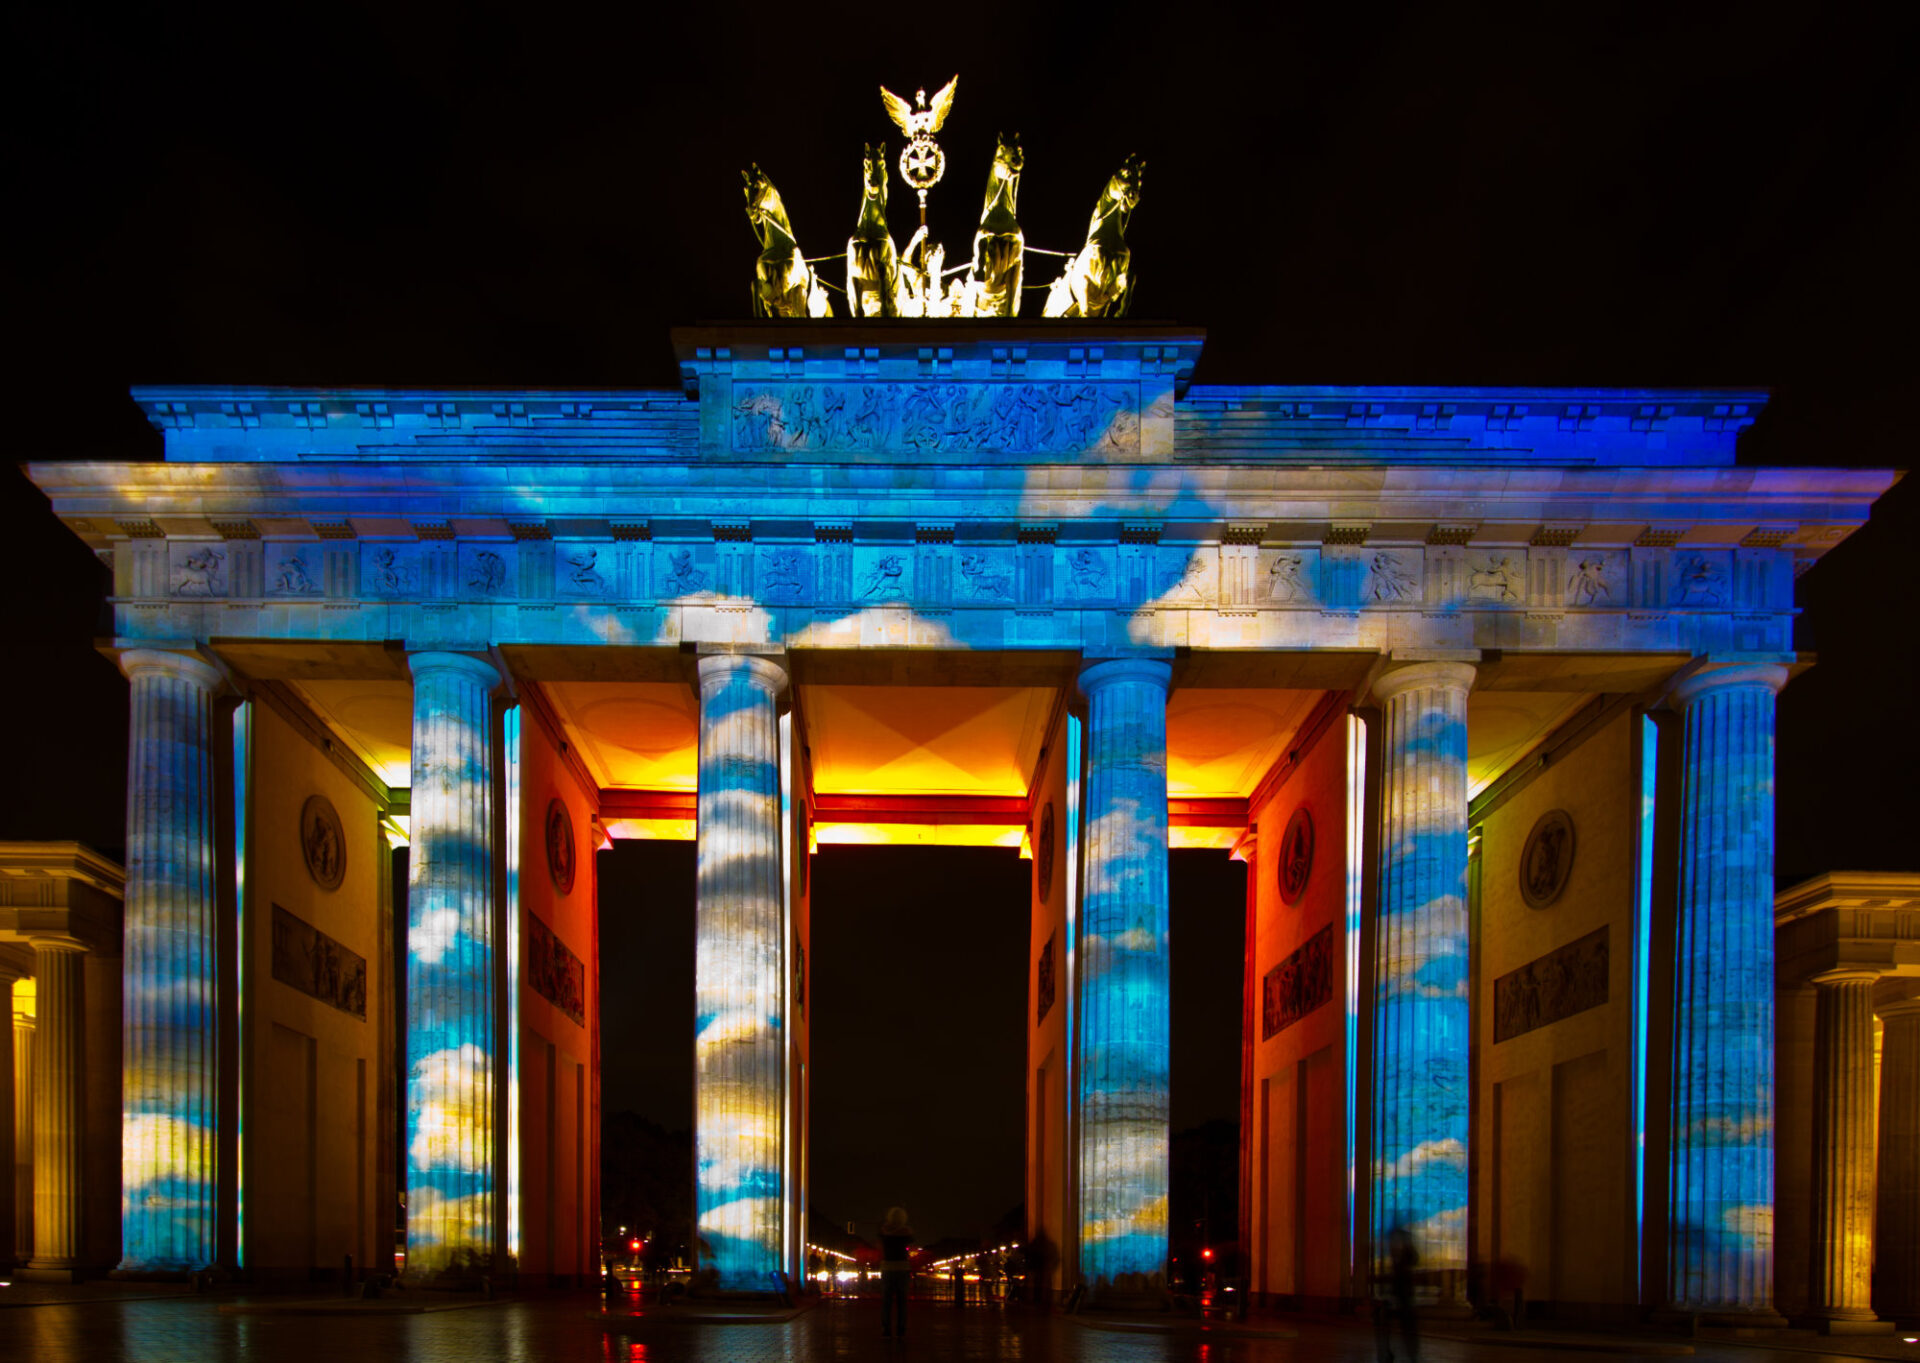 Berlin Festival of Lights 2012